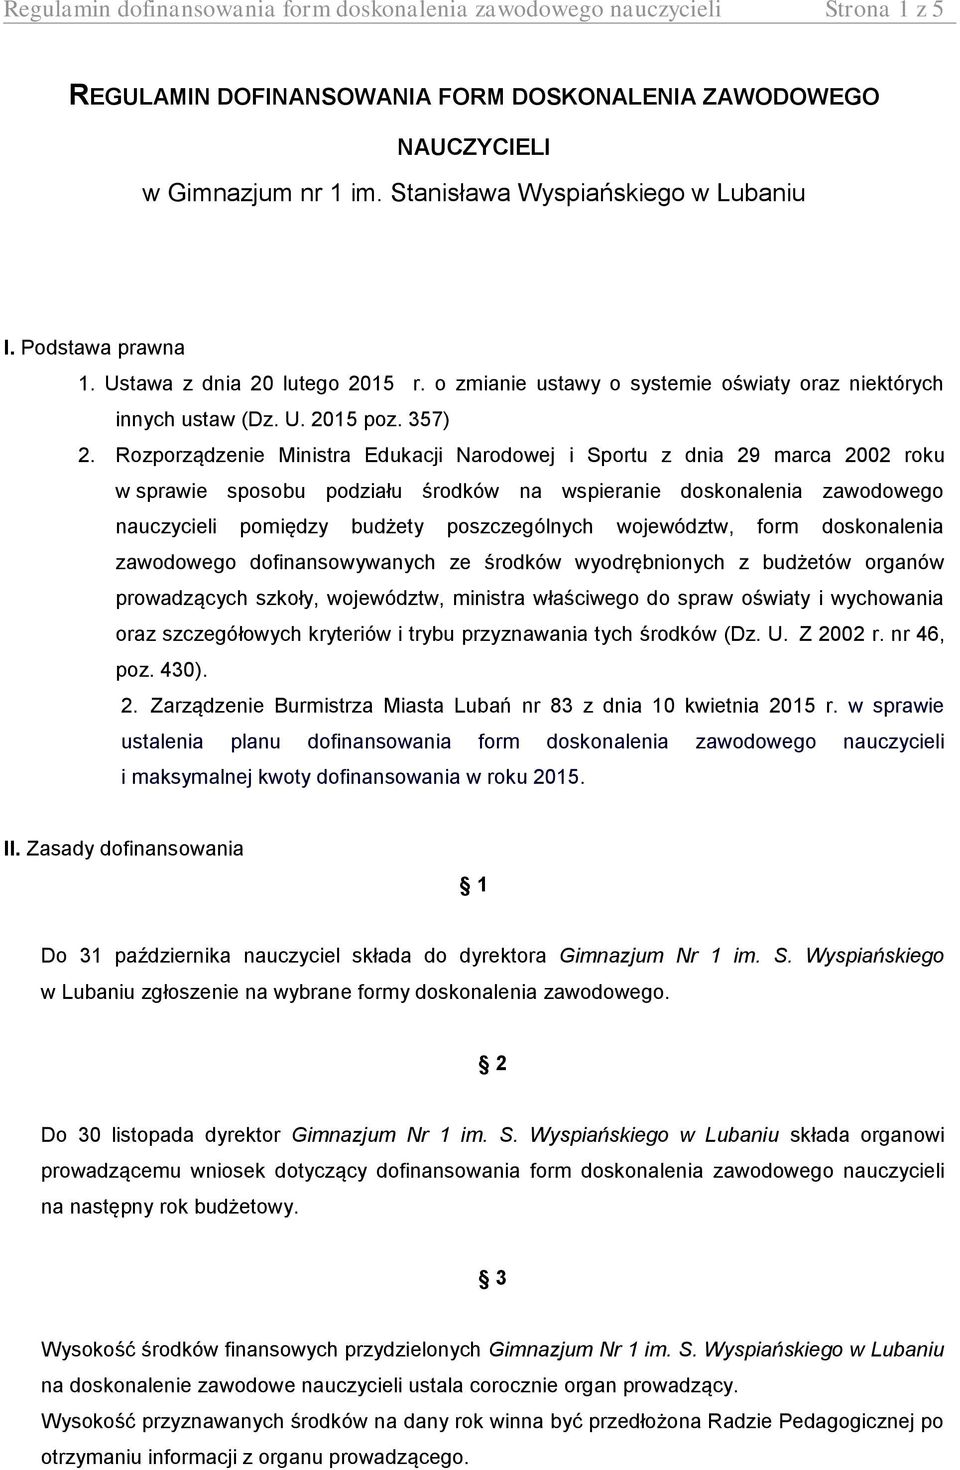 Rozporządzenie Ministra Edukacji Narodowej i Sportu z dnia 29 marca 2002 roku w sprawie sposobu podziału środków na wspieranie doskonalenia zawodowego nauczycieli pomiędzy budżety poszczególnych